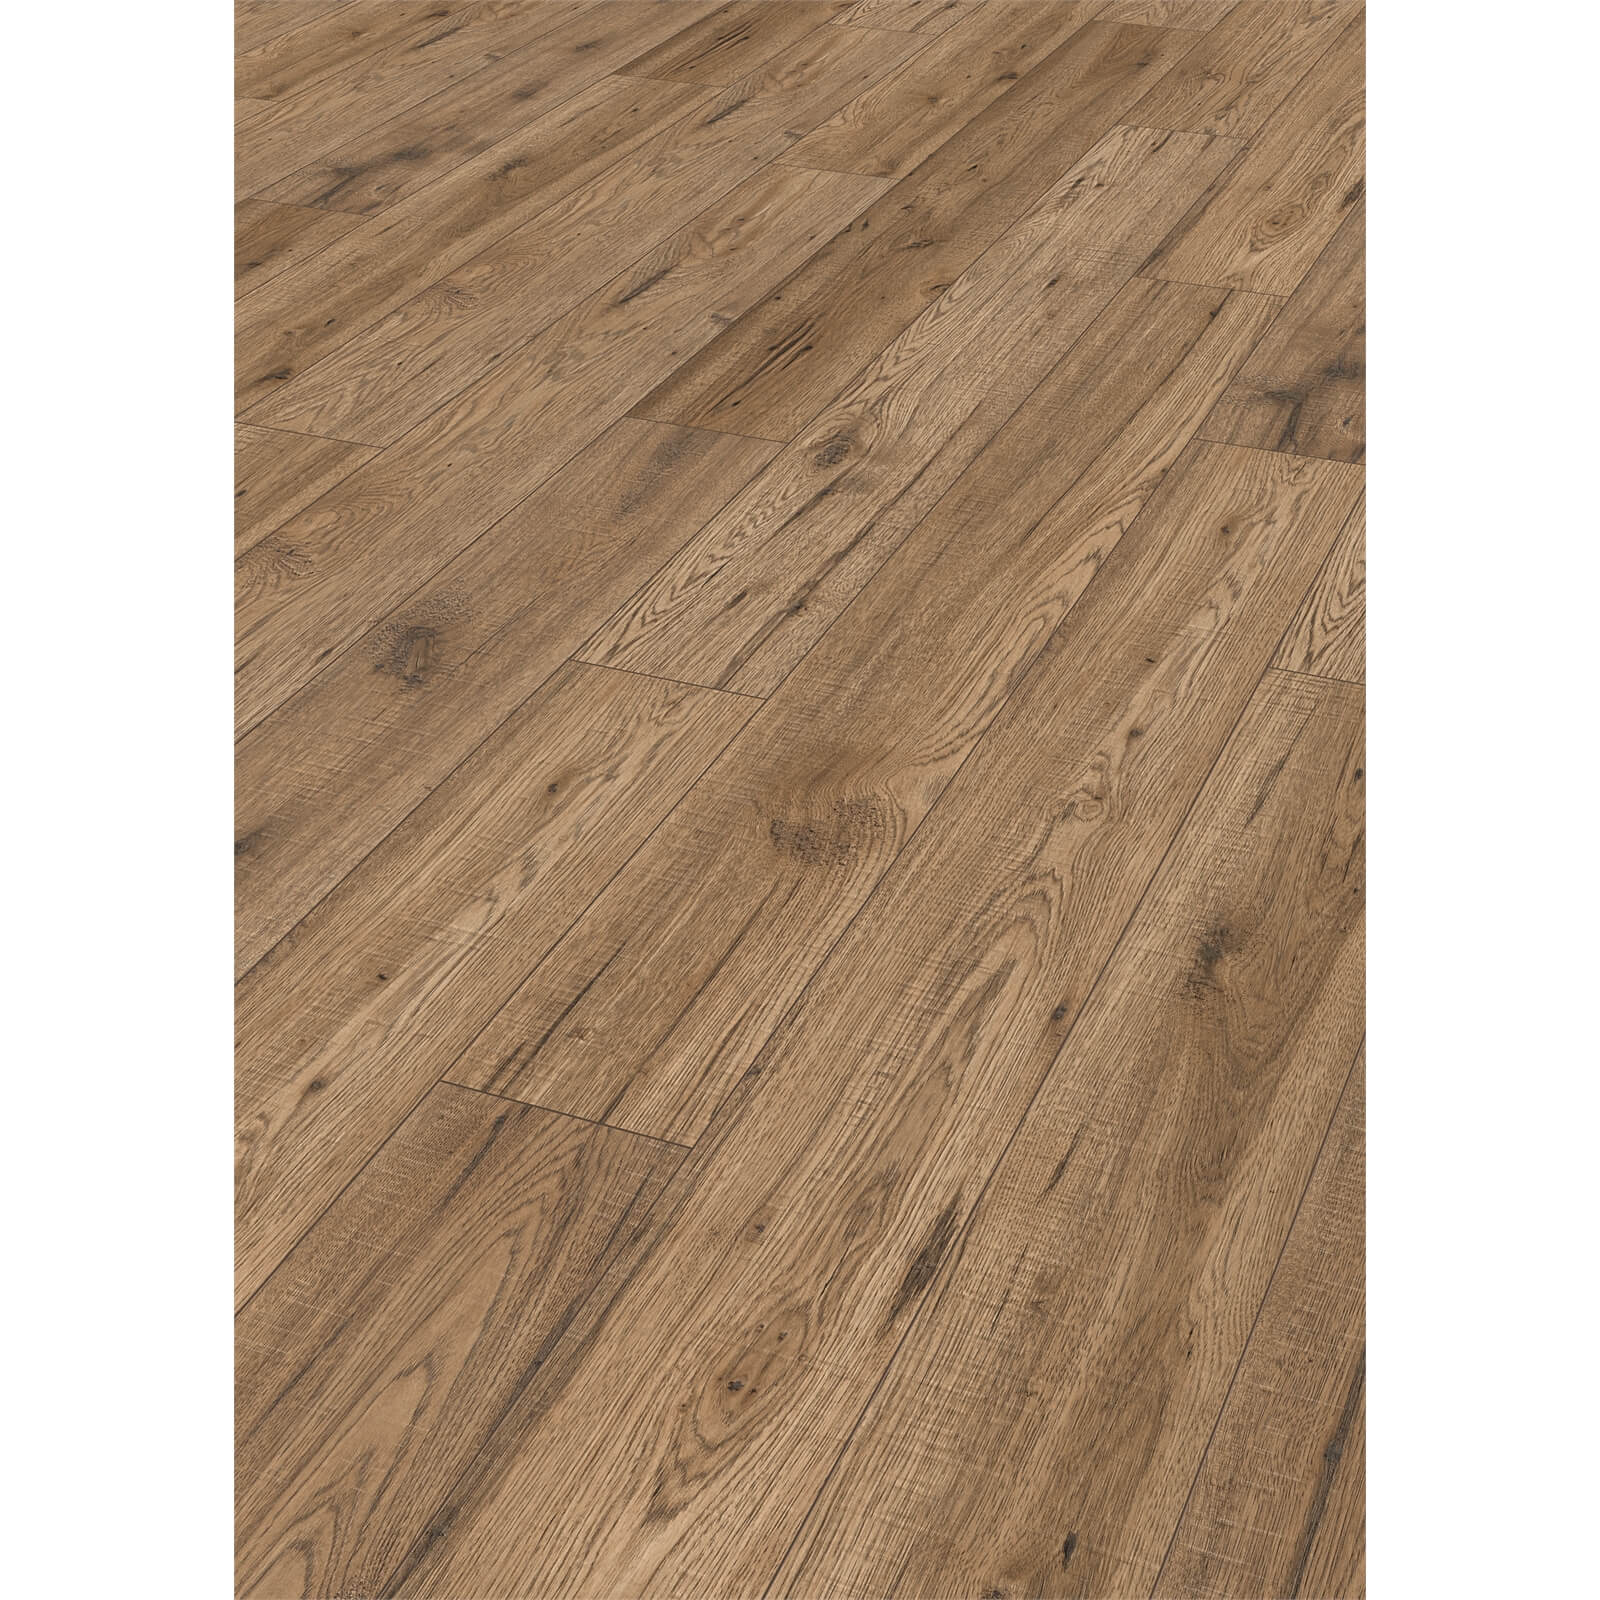 Burcote Oak Laminate Flooring